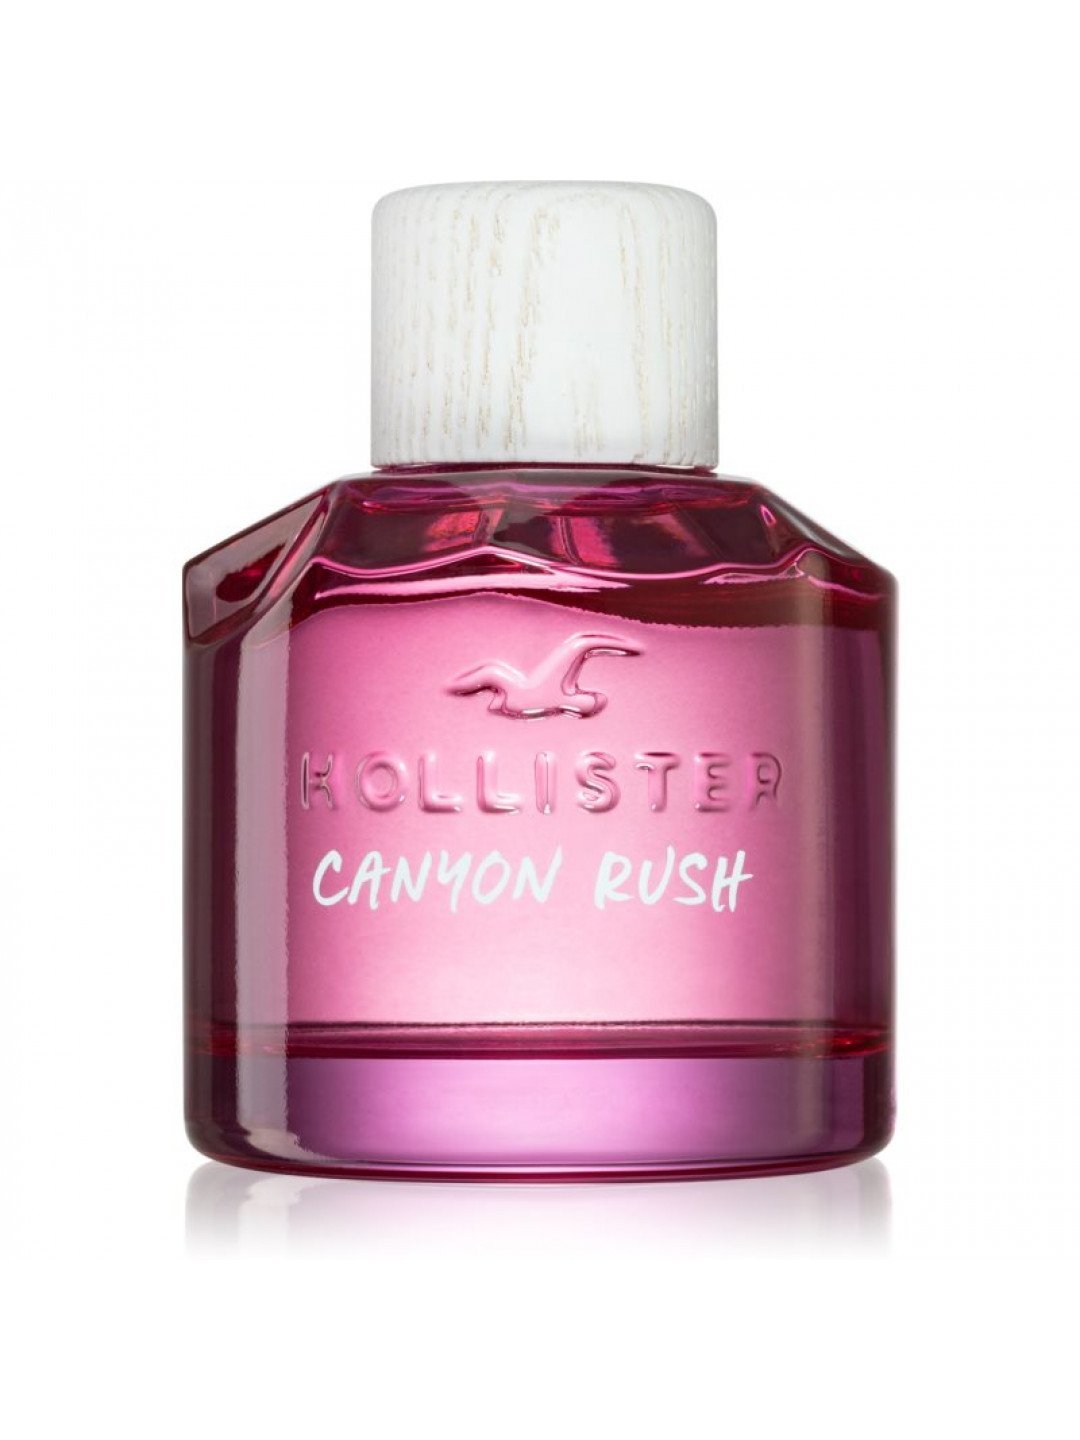 Hollister Canyon Rush for Her parfémovaná voda pro ženy 30 ml